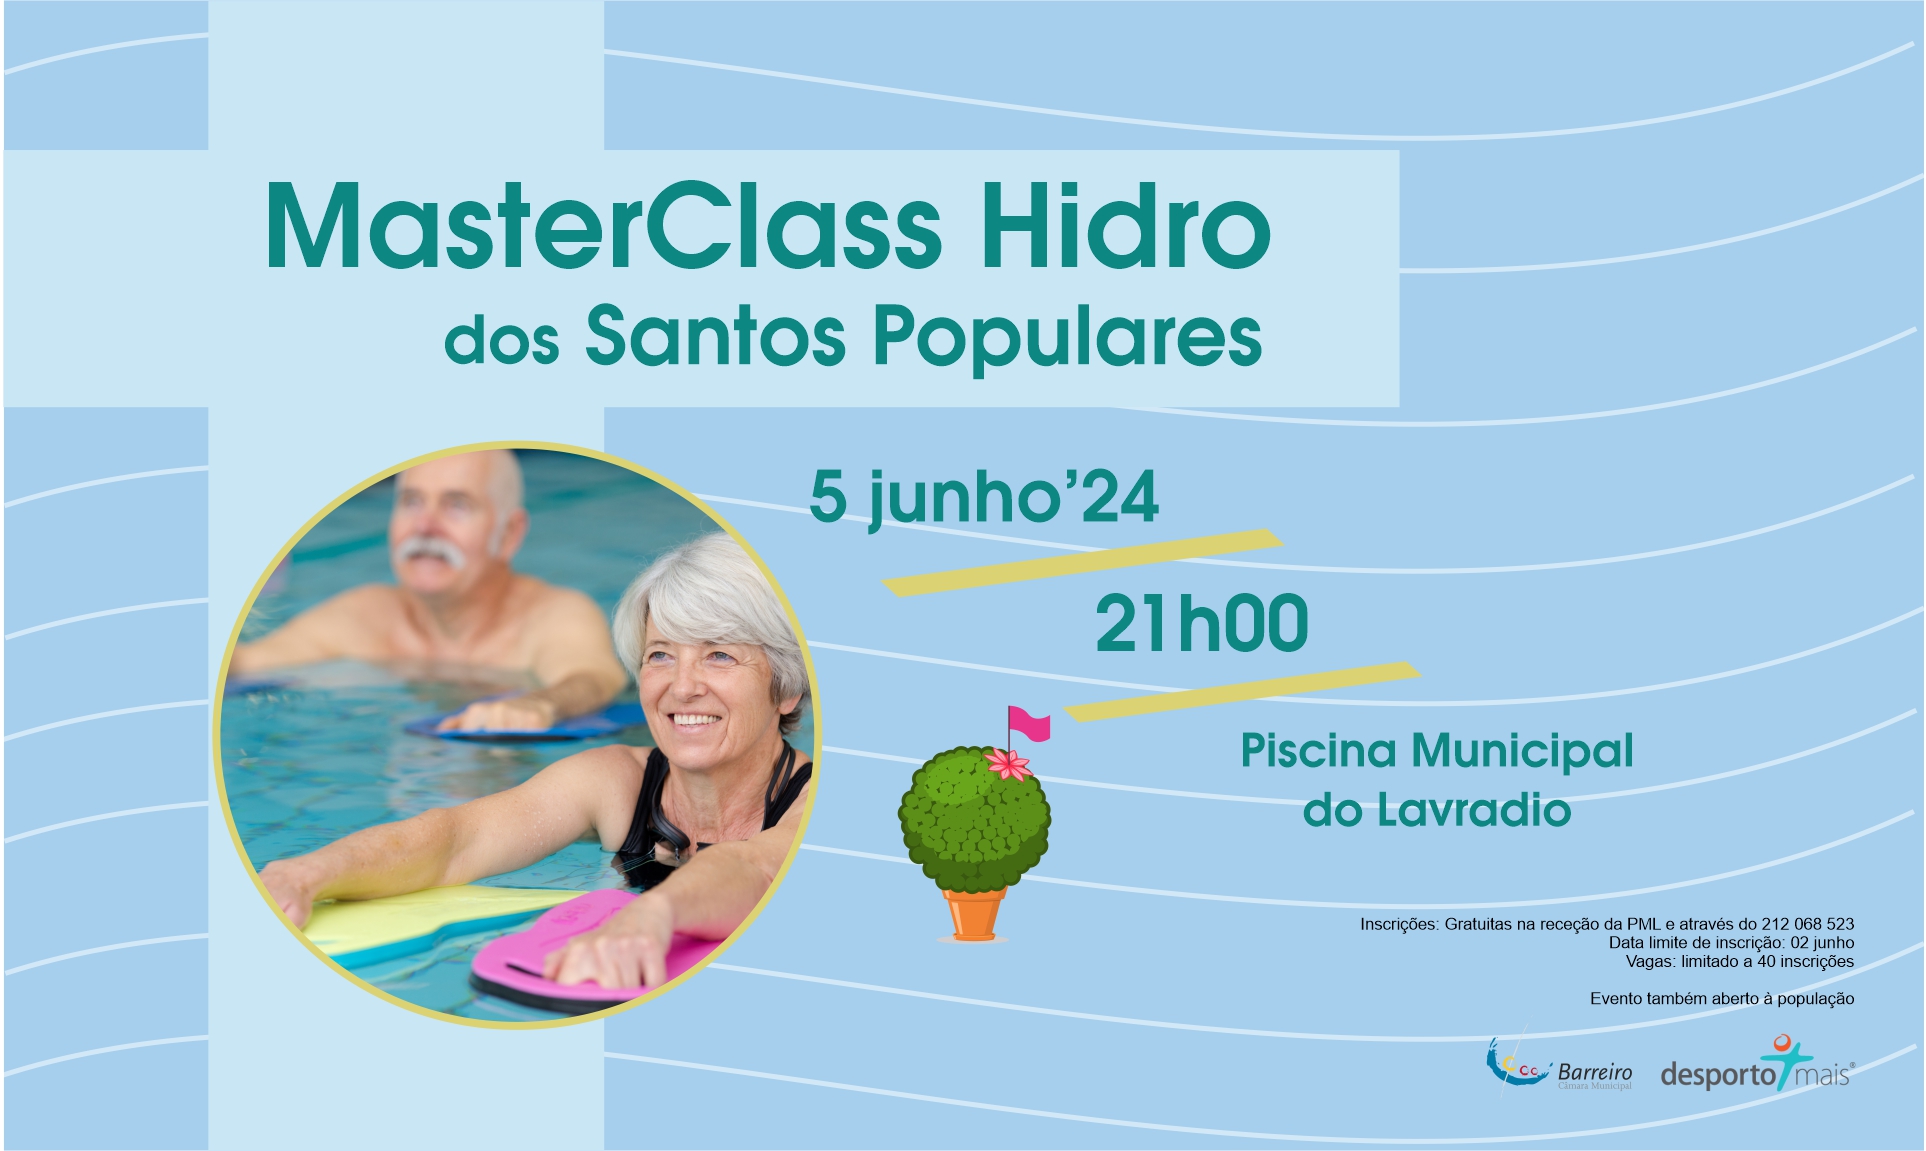 MasterClass Hidro dos Santos Populares | Circuito Natação Barreiro | 05 junho | Piscina Lavradio